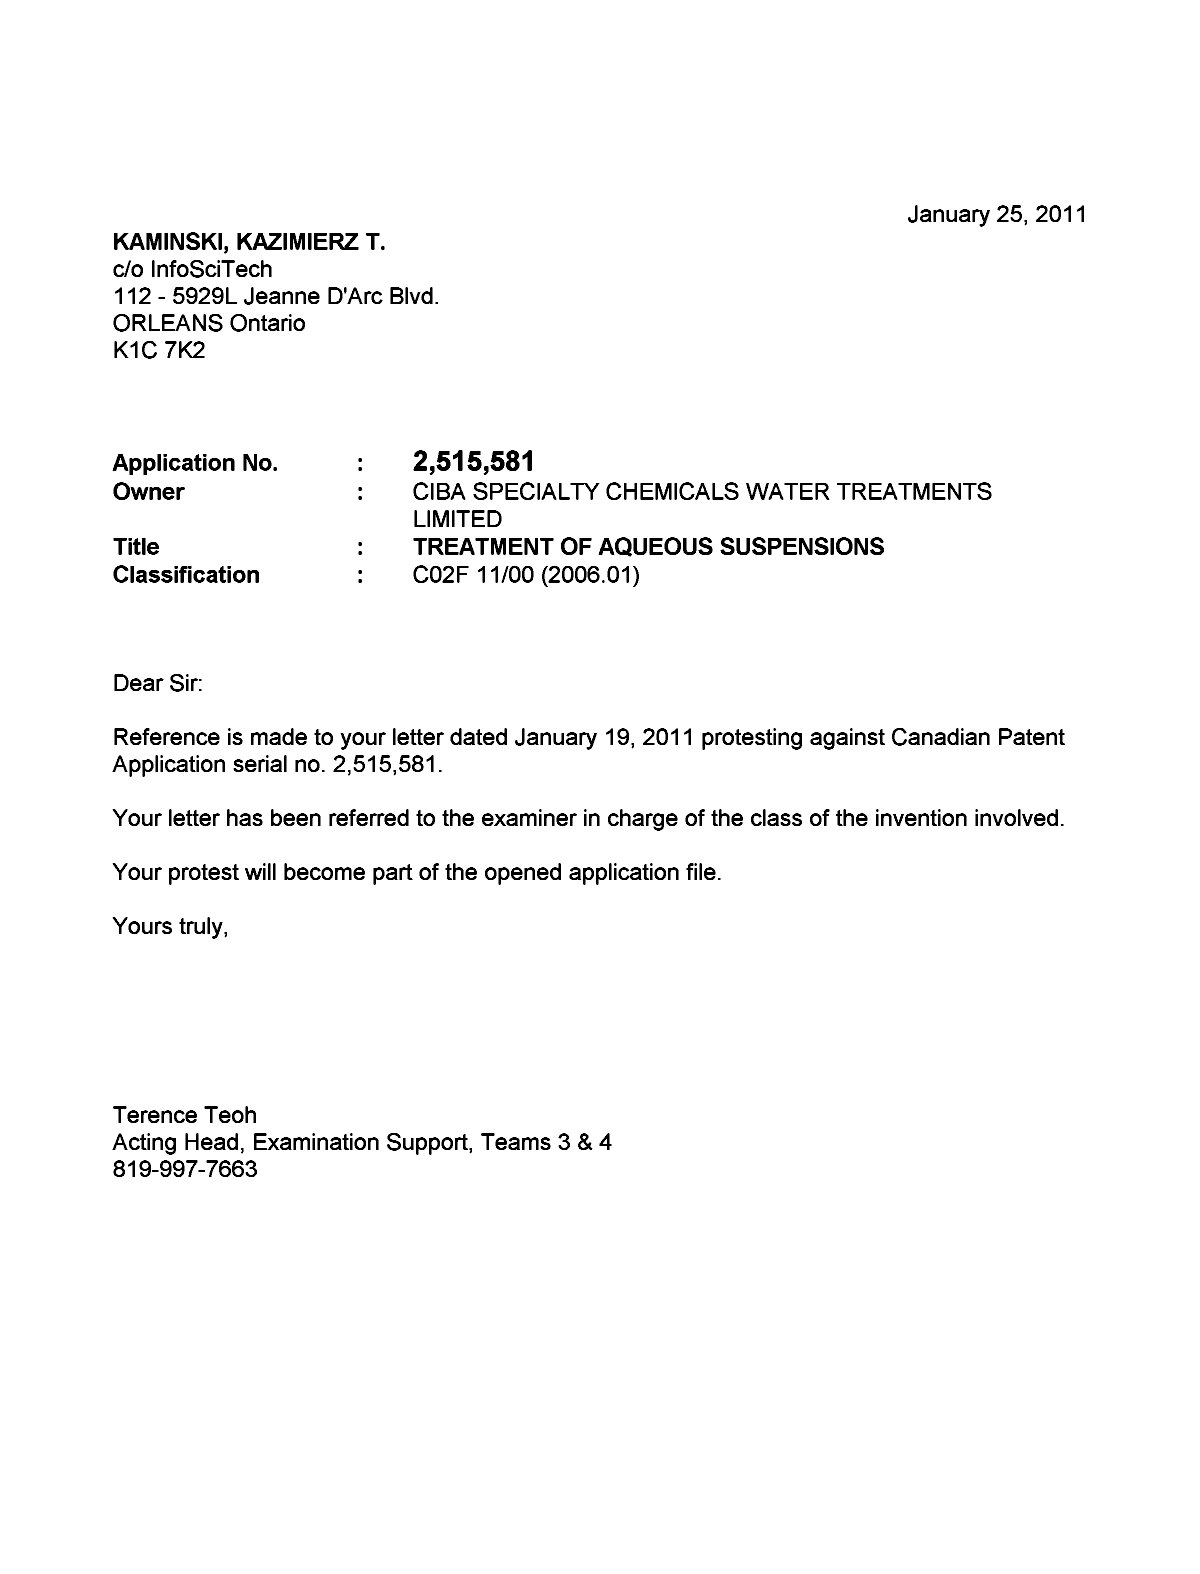 Document de brevet canadien 2515581. Poursuite-Amendment 20101225. Image 2 de 2